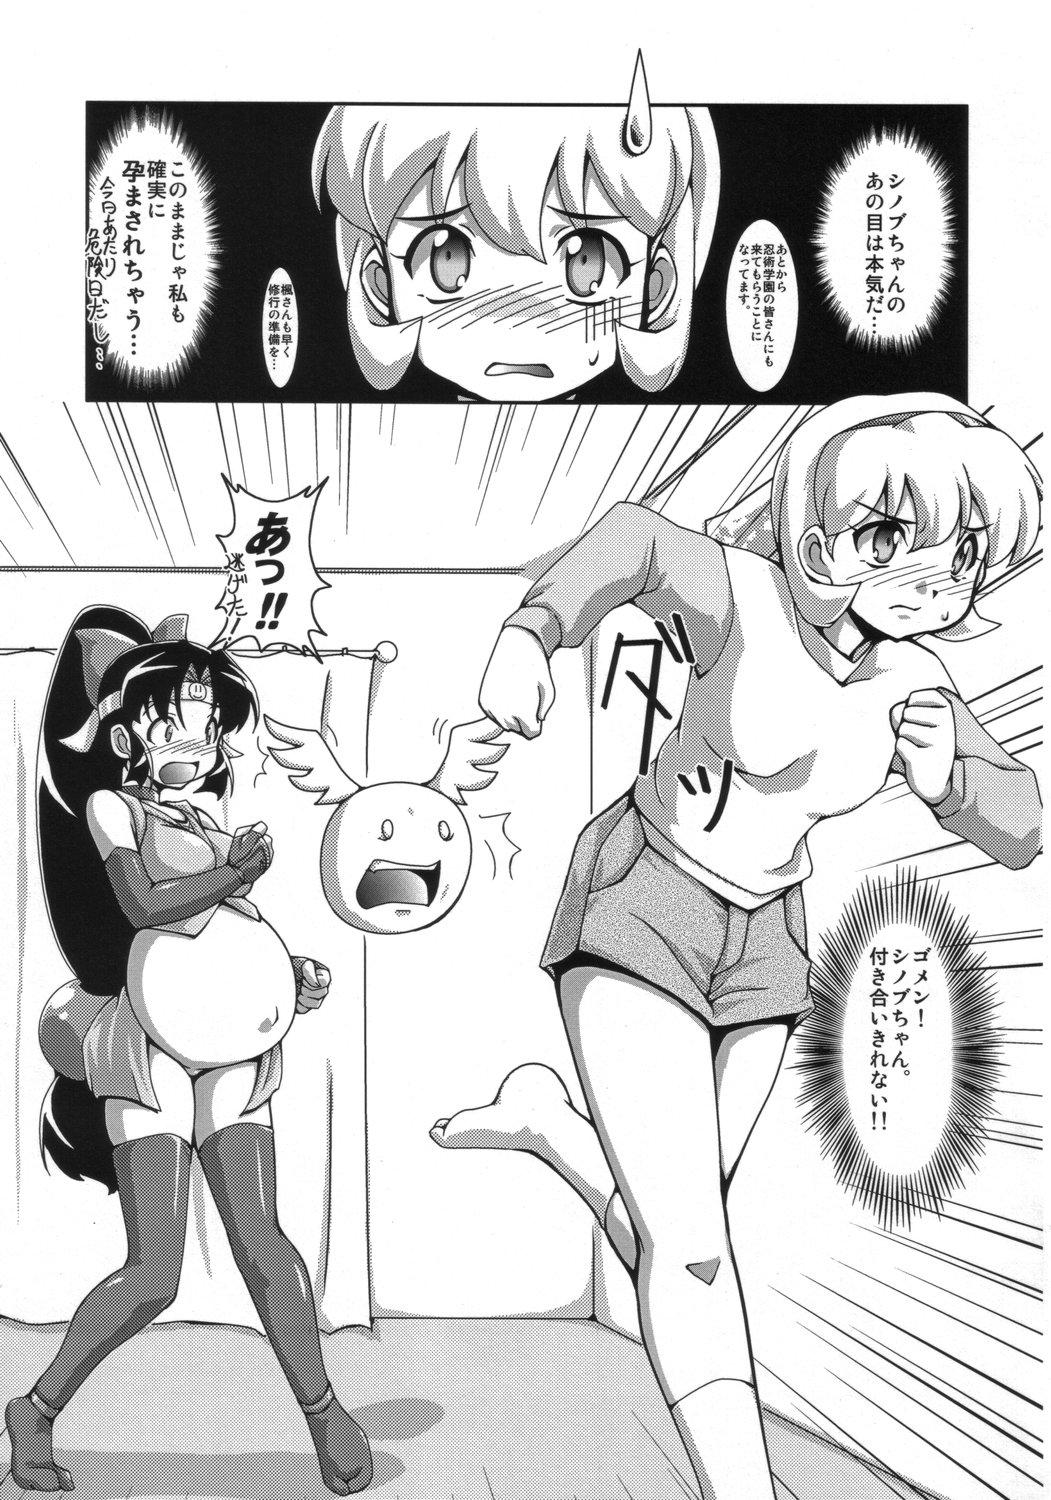 Sapphicerotica Ninshin Shinobu Densetsu - 2x2 shinobuden Women Sucking Dicks - Page 8